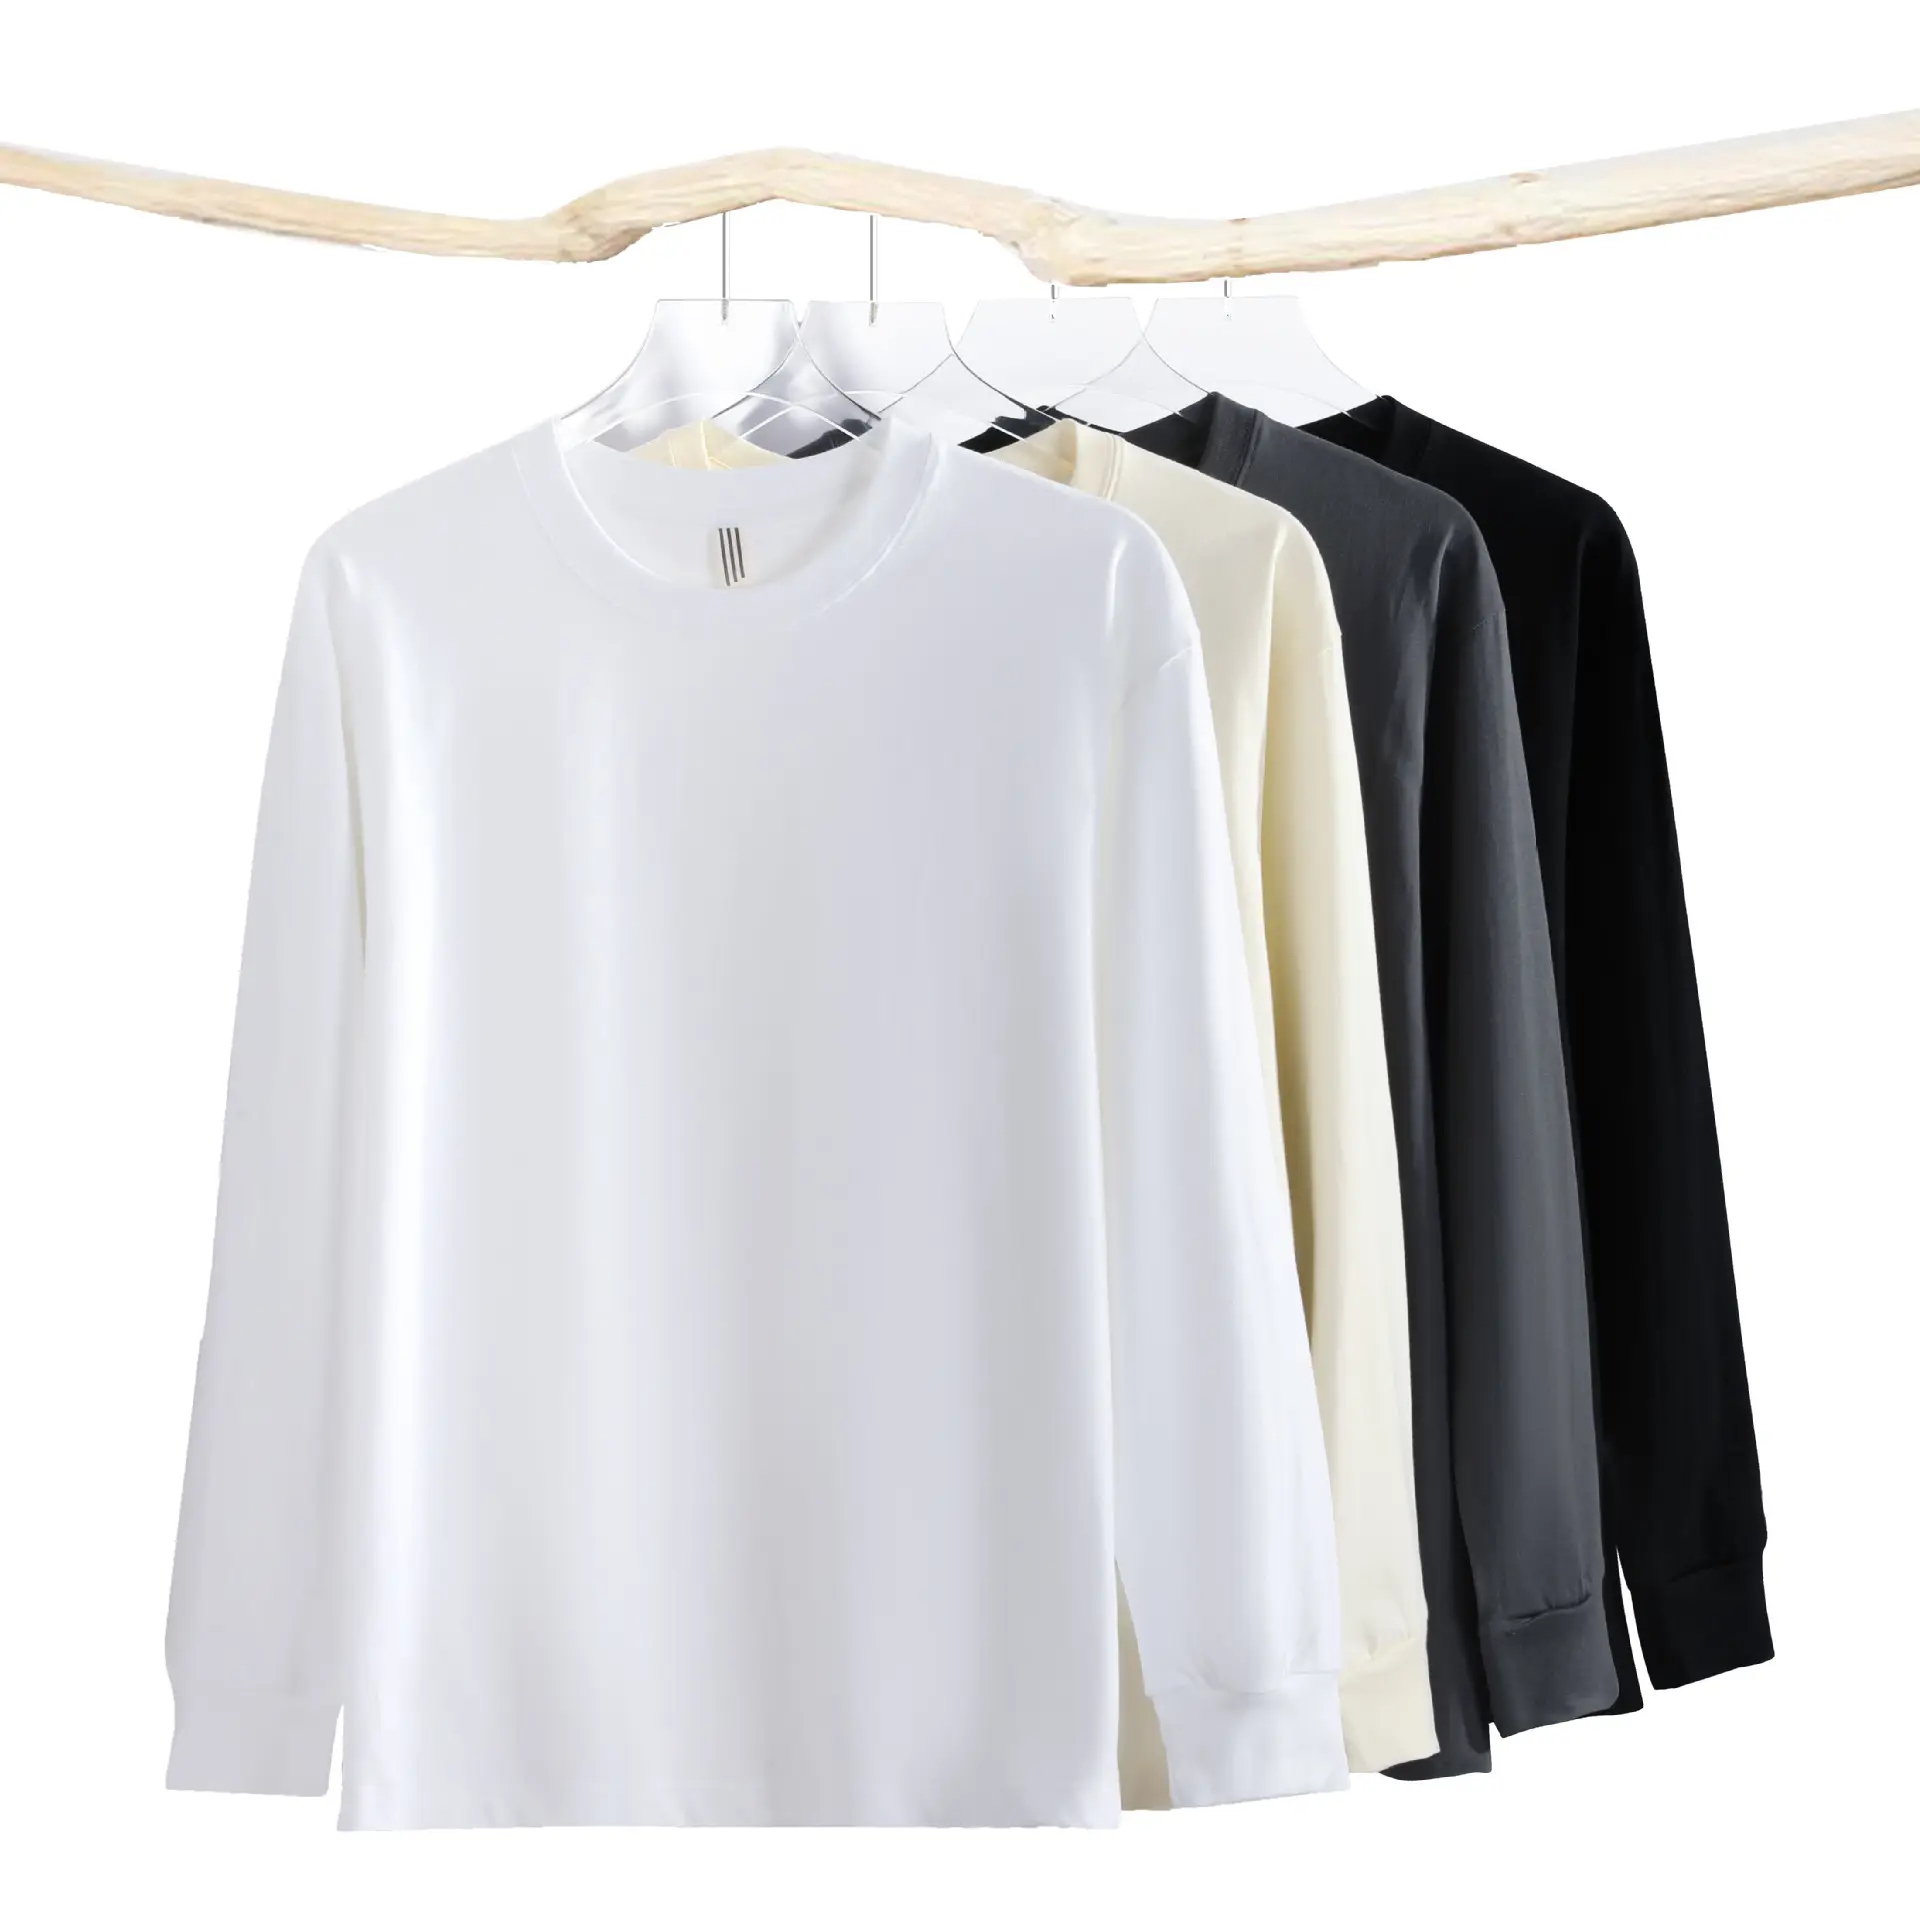 Nieuwe Zwaargewicht 230G Draad Lange Mouw T-Shirt Mannen Losse Pasvorm Basis Wit Puur Katoenen Binnenste Basis T-Shirt Voor Koppels